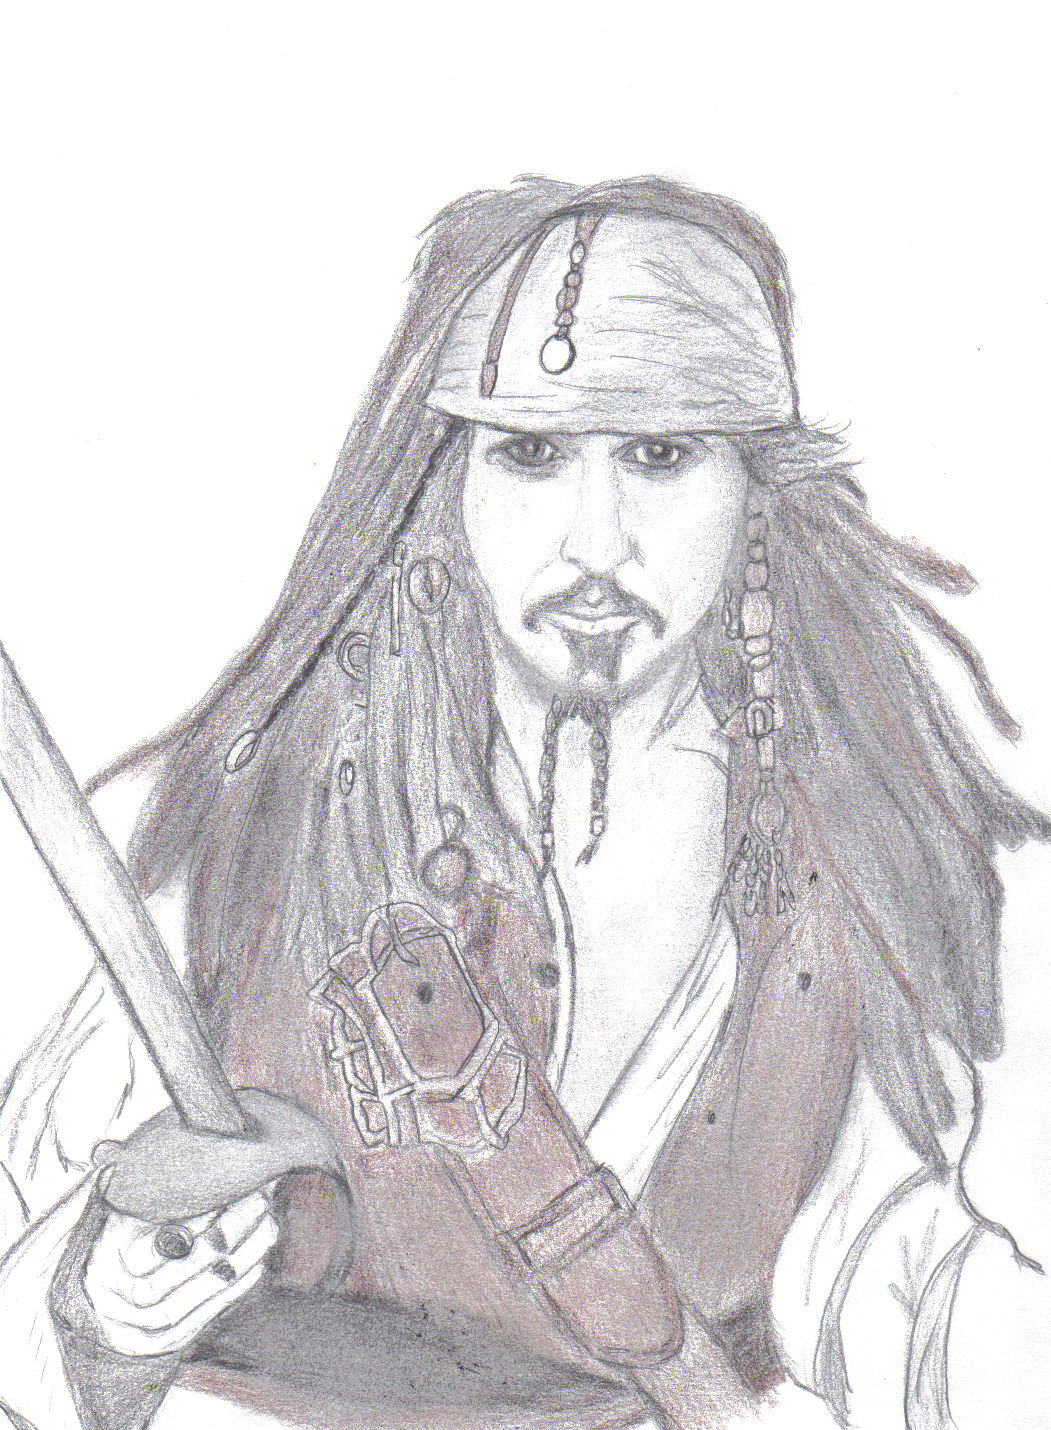 Jack Sparrow by Coco50